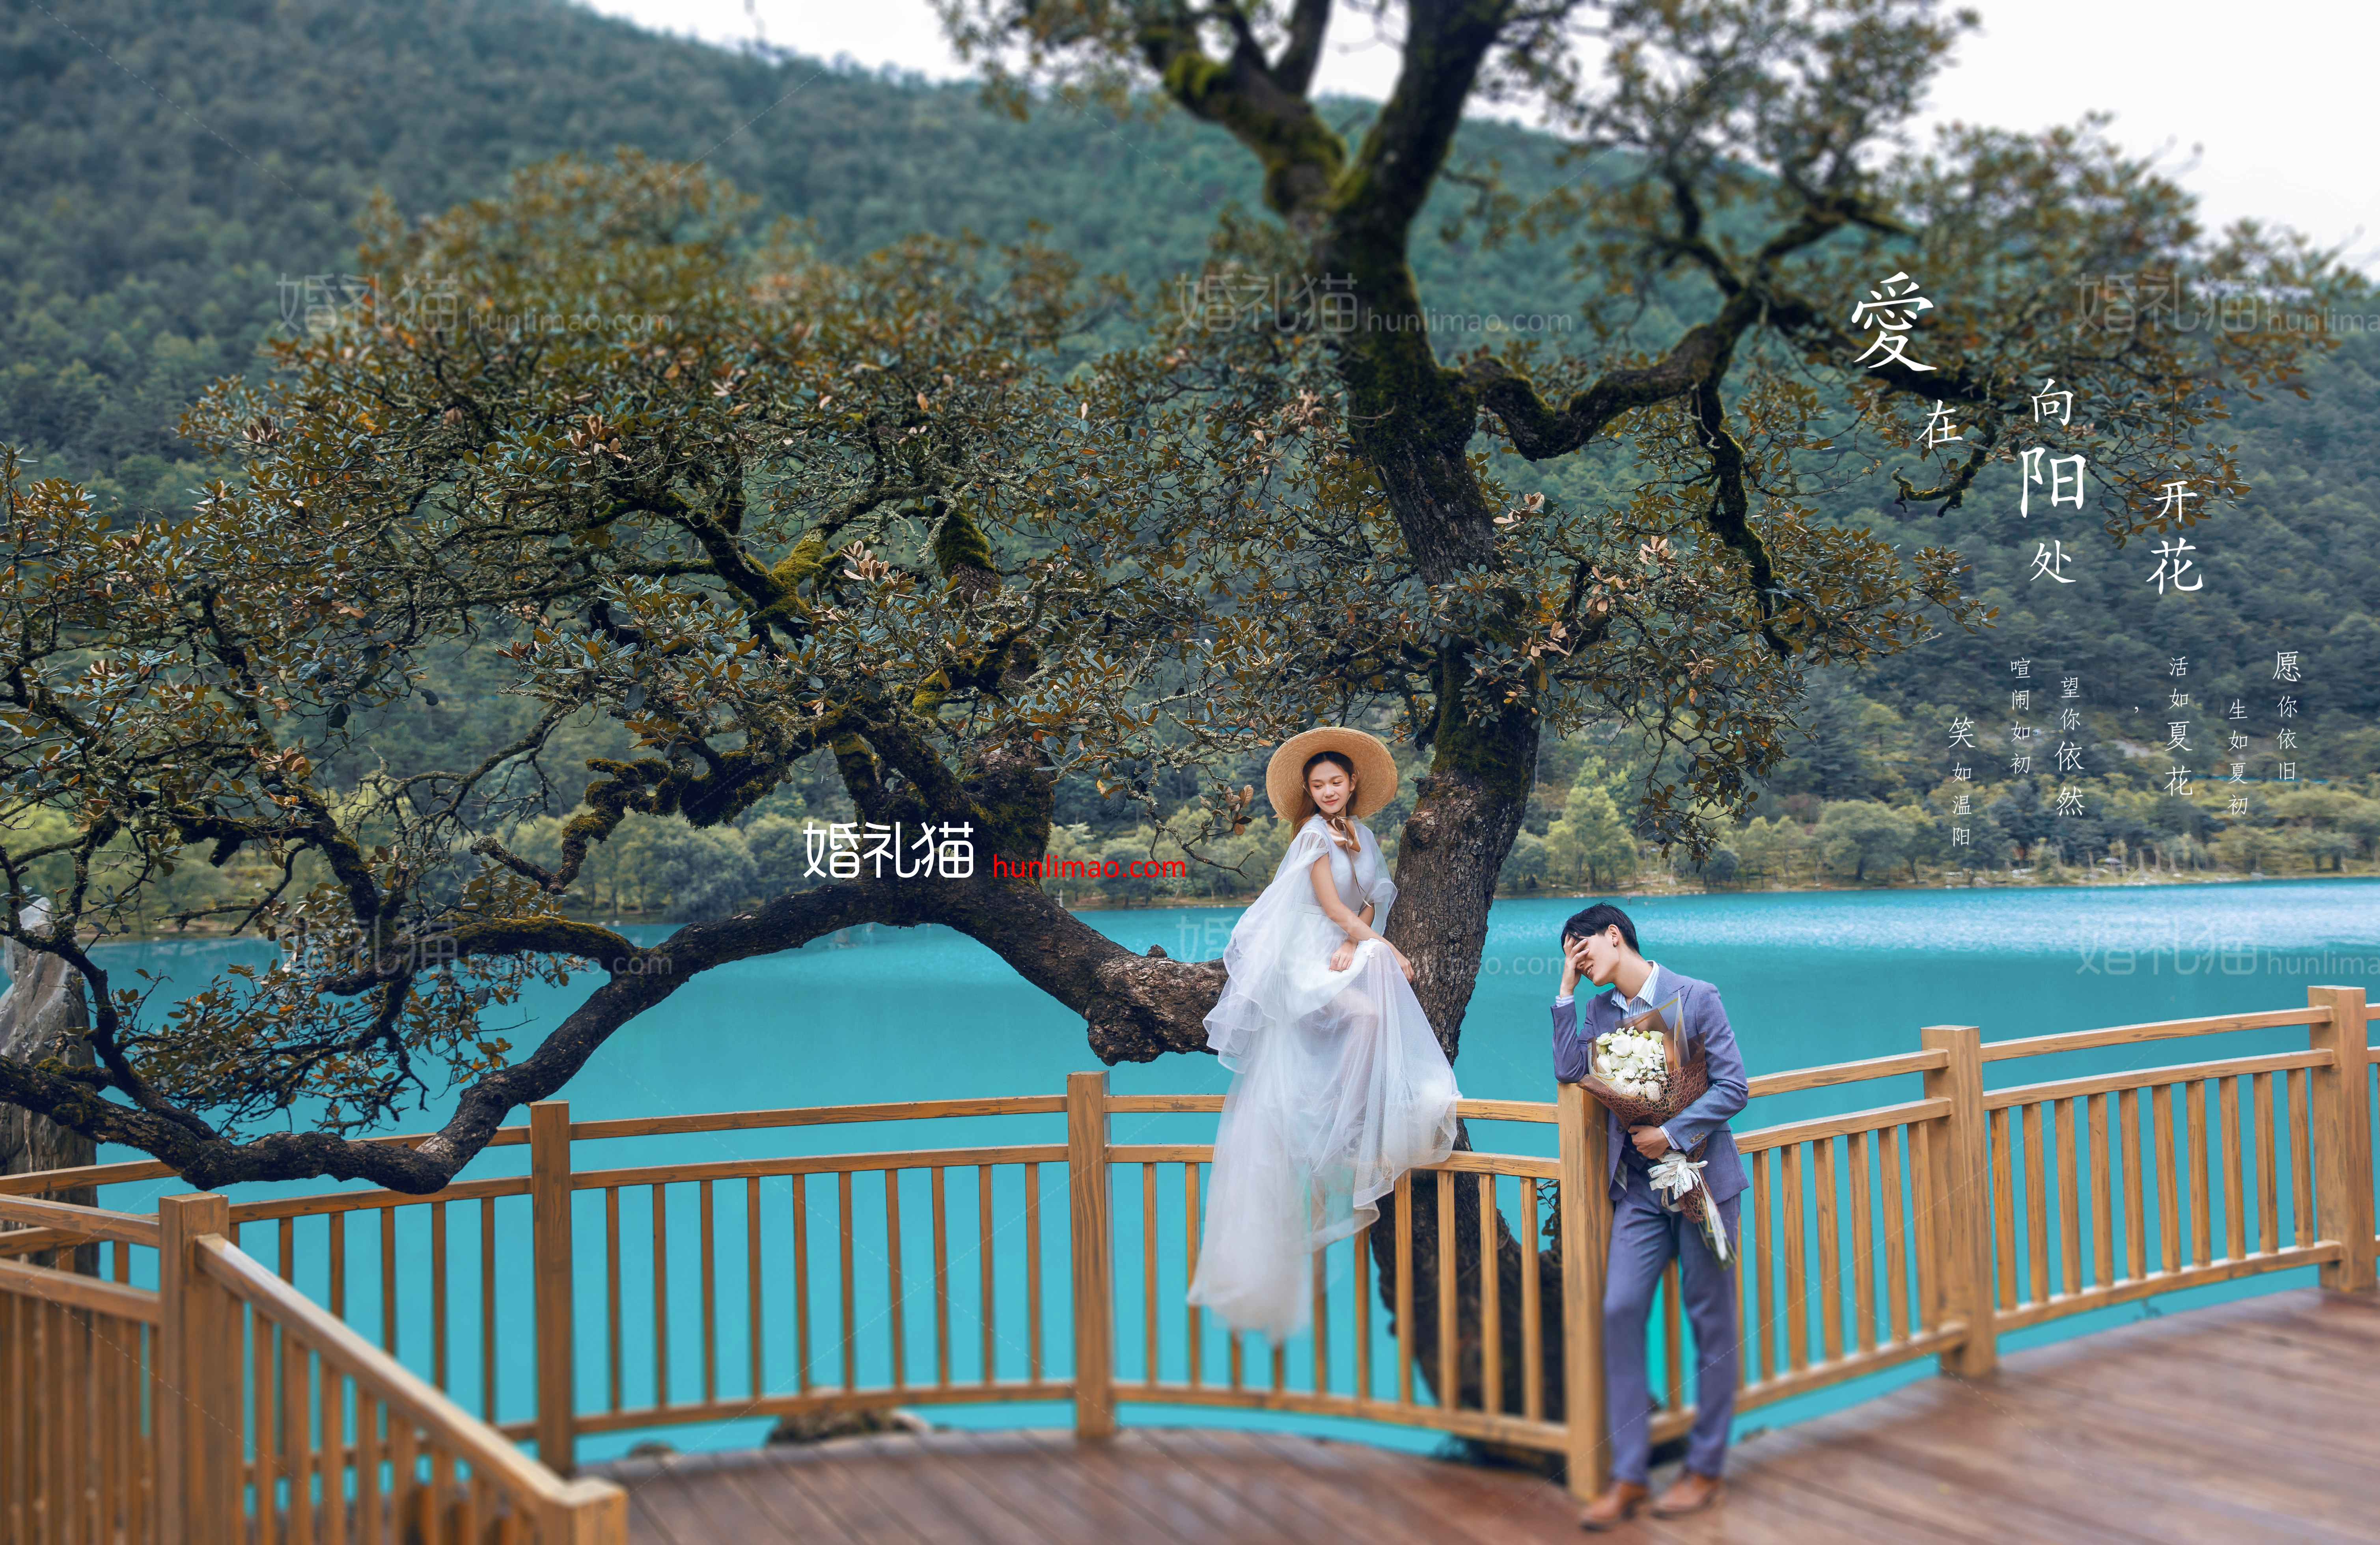 2018年8月上海婚纱摄影,丽江婚纱照,婚纱照图片